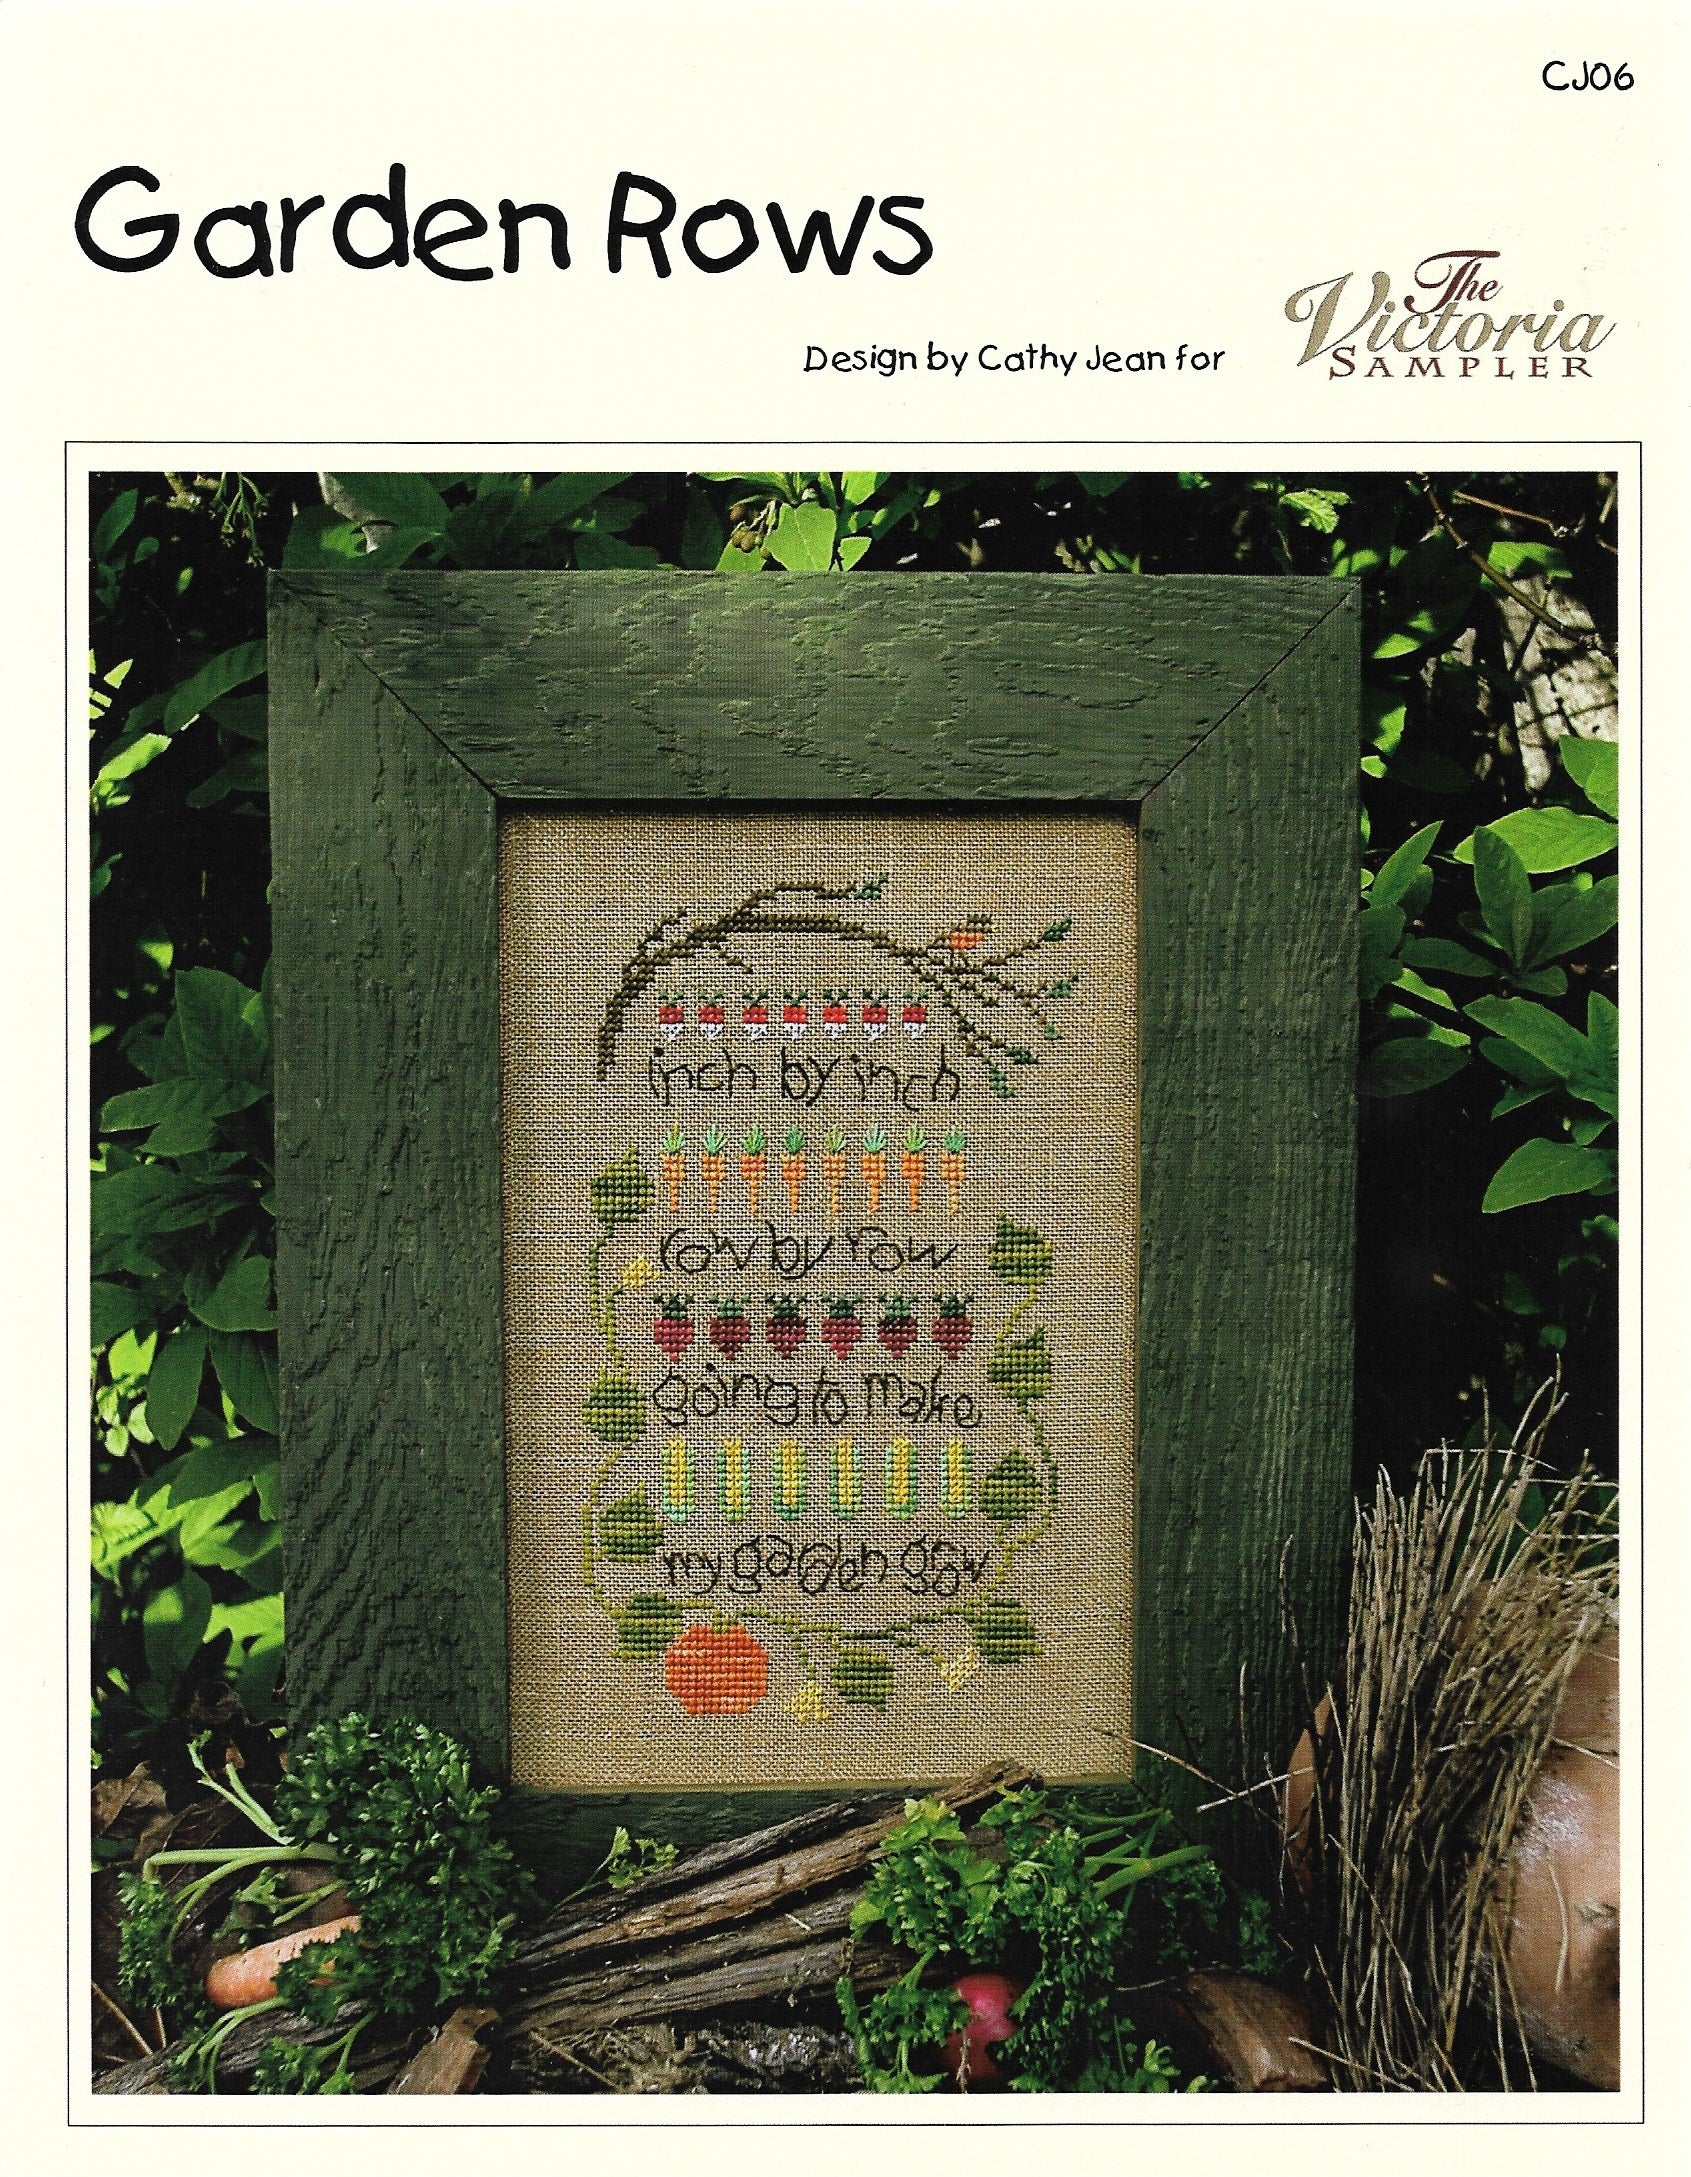 Victoria Sampler Garden Rows CJ06 cross stitch pattern